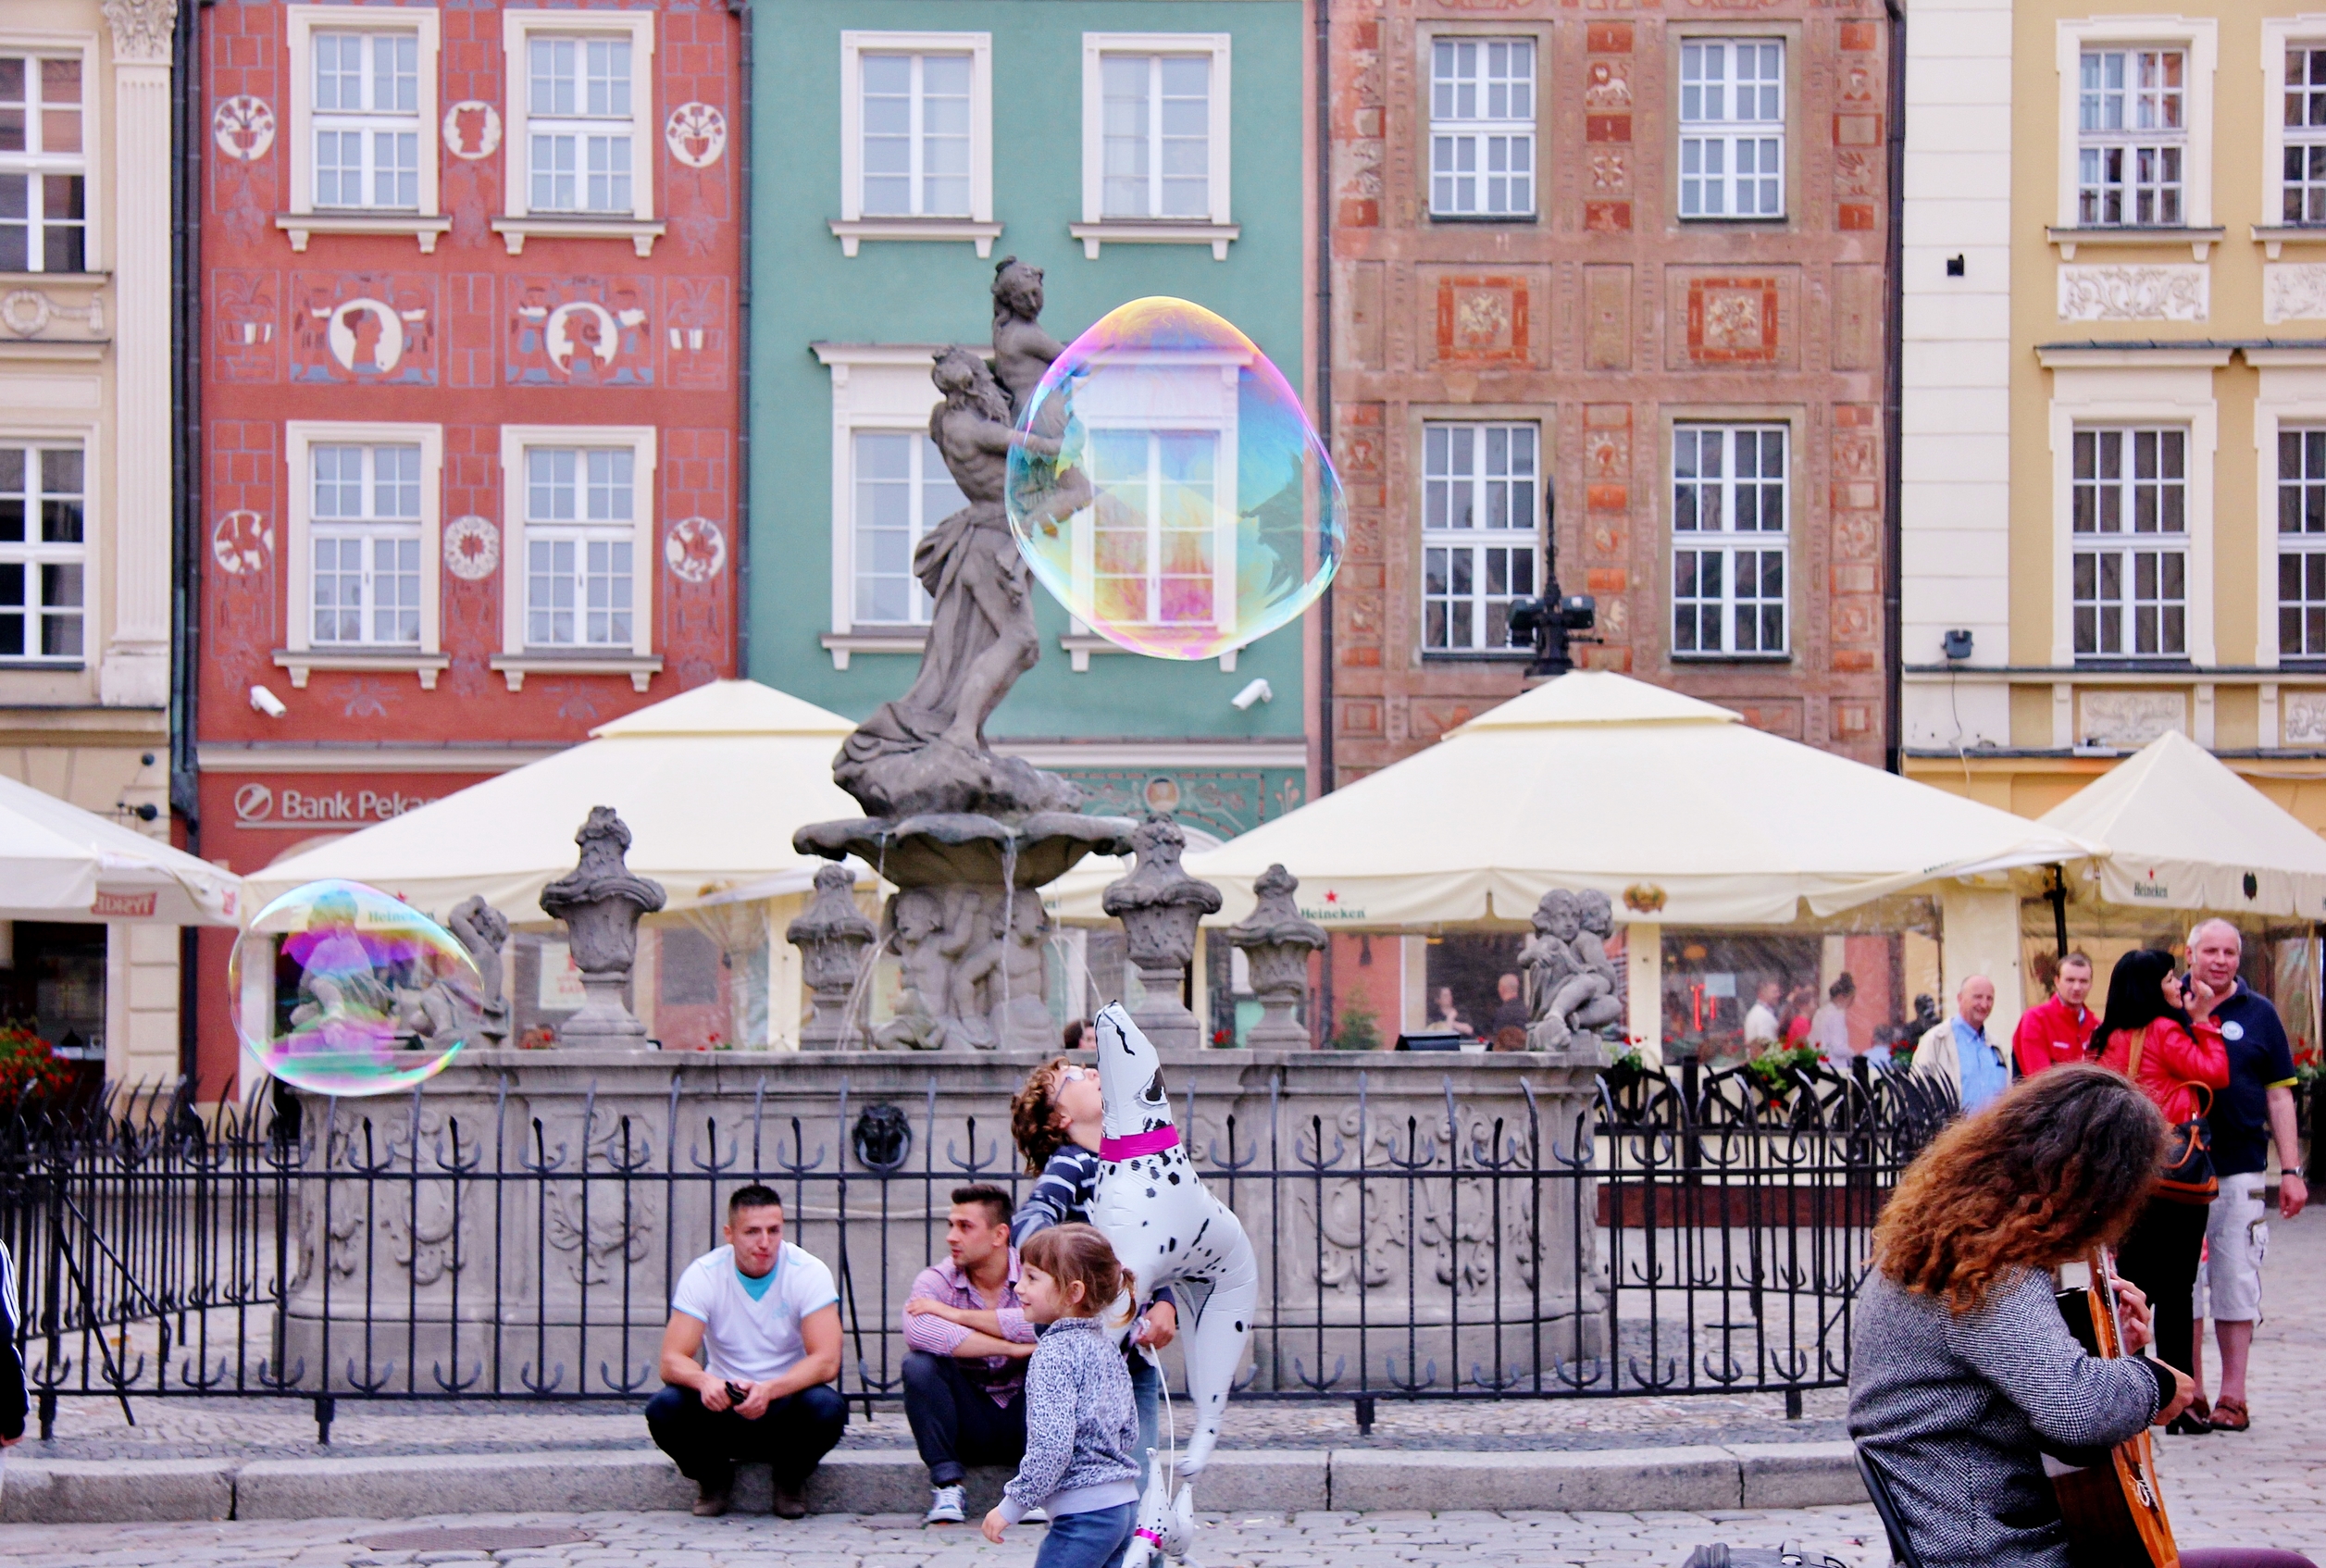 Poznan's colourful main square